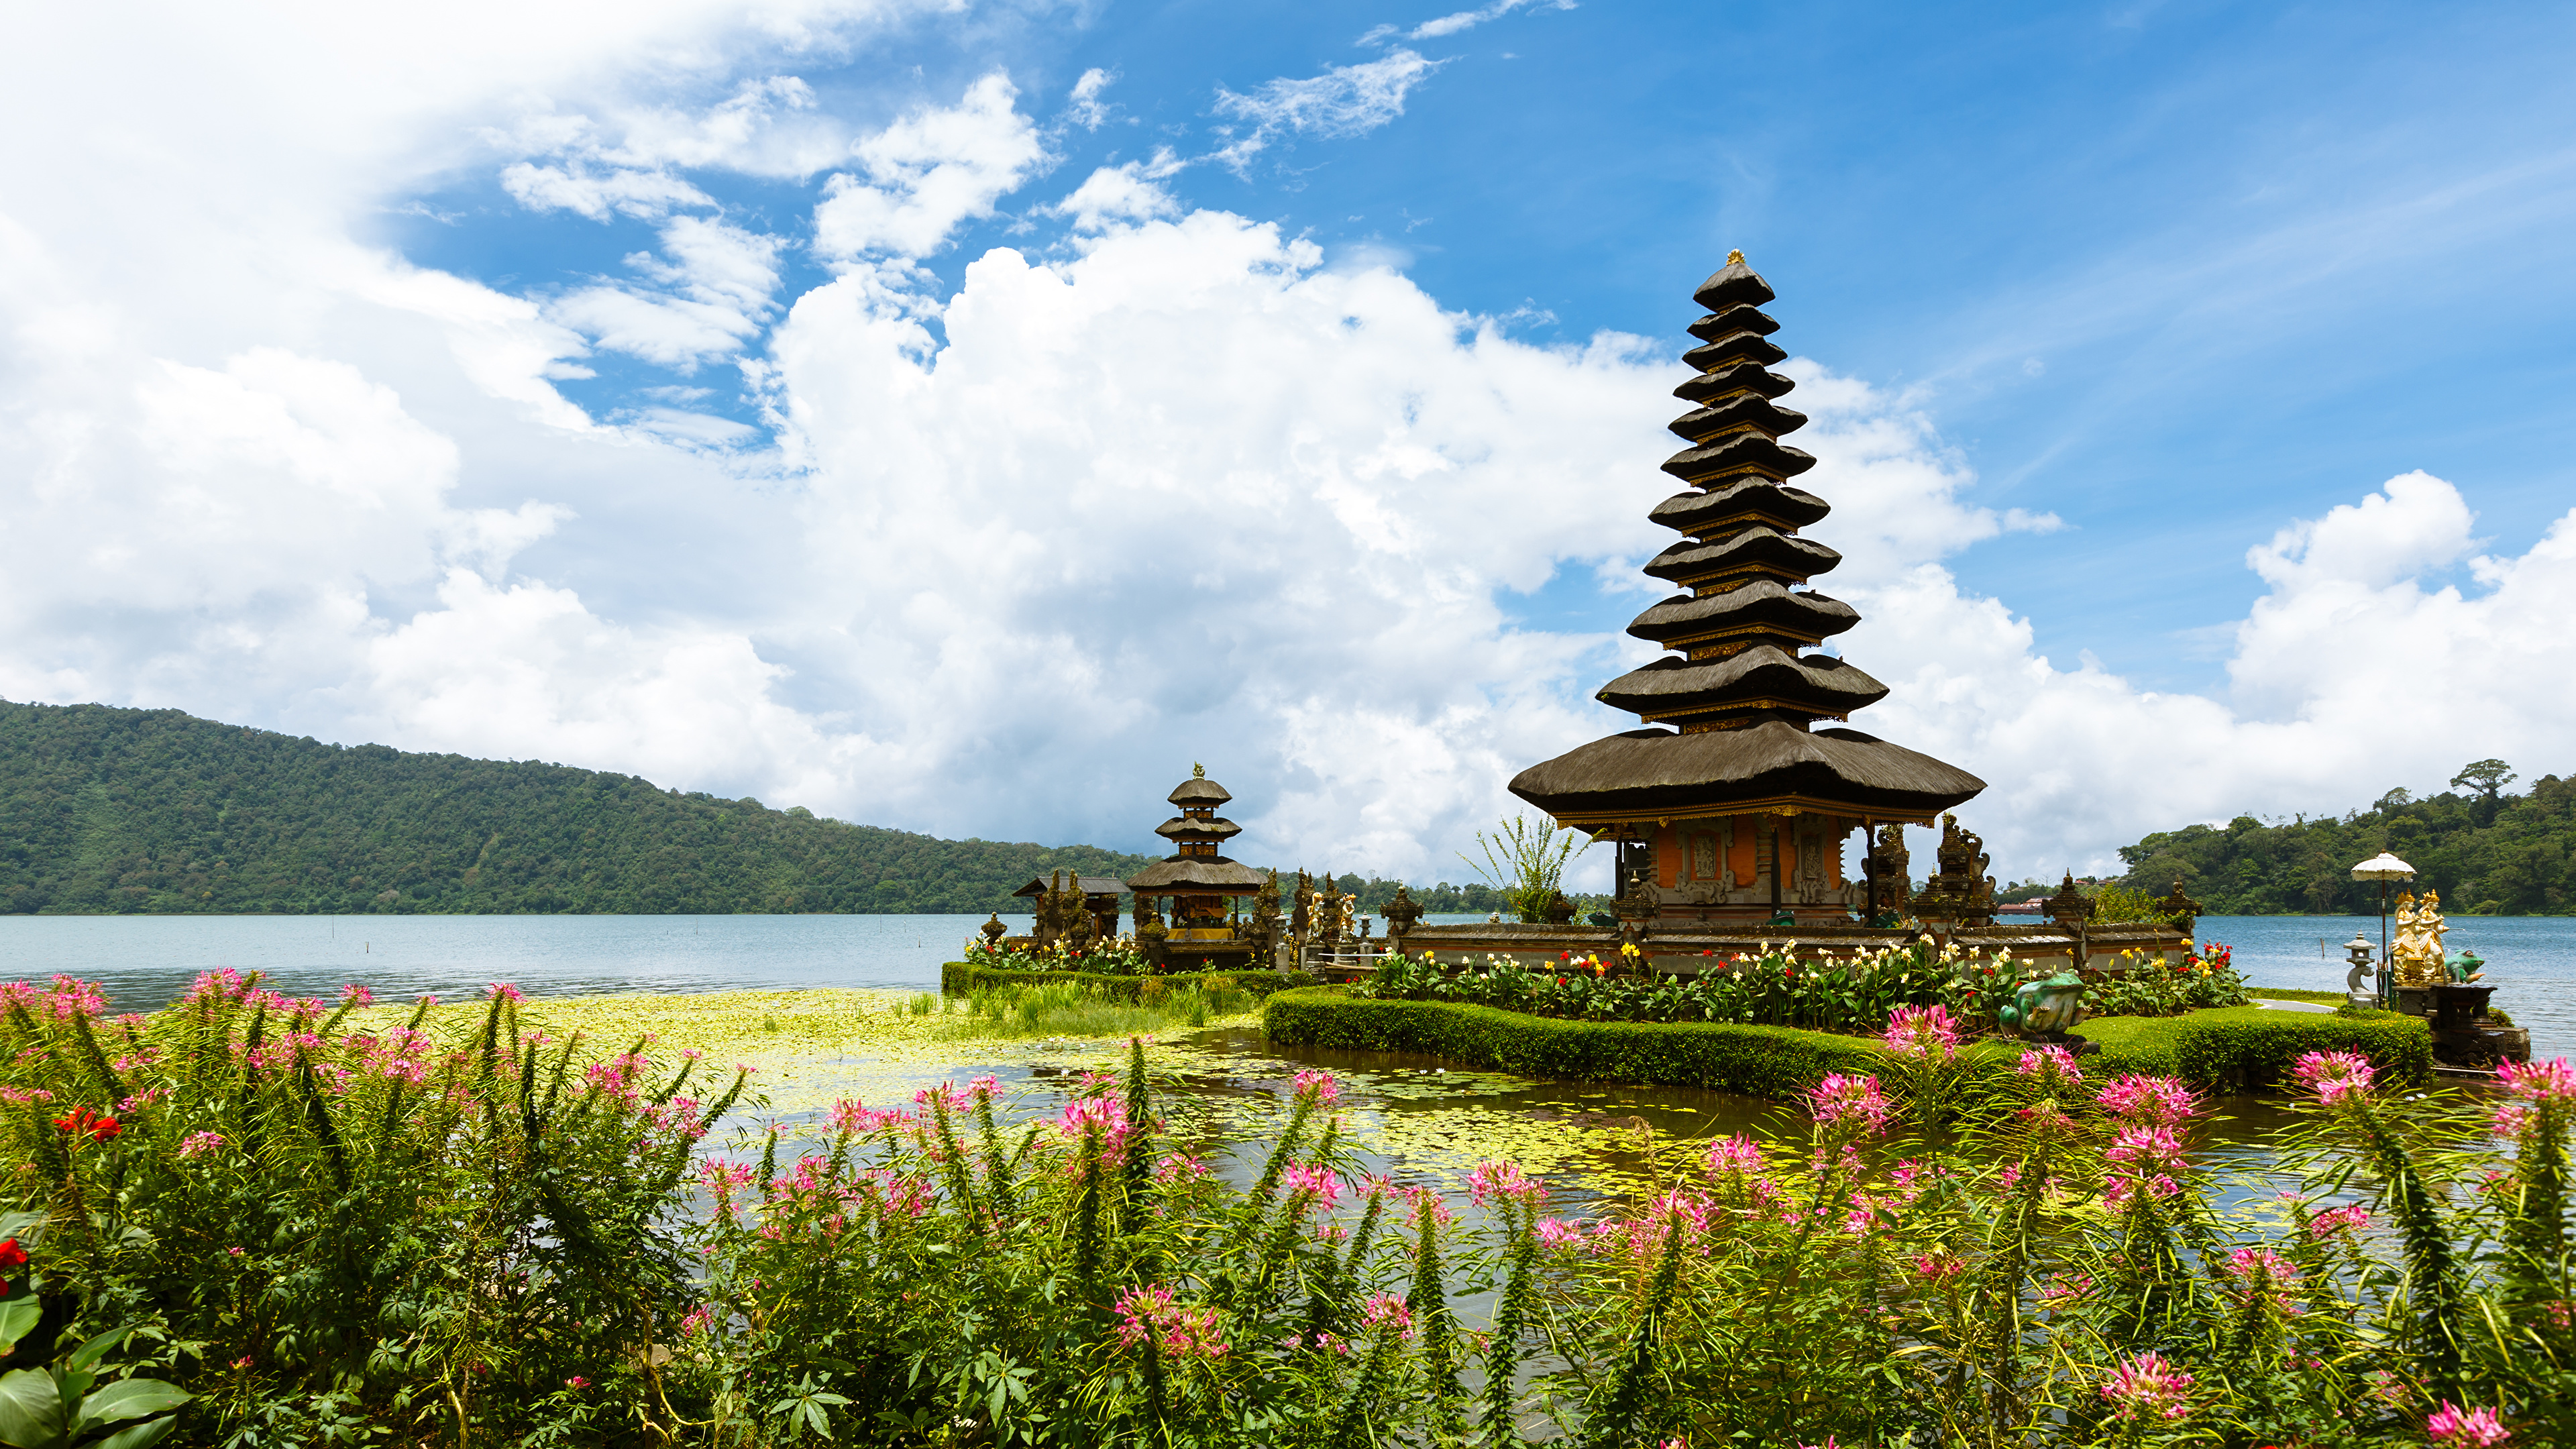 Обои для рабочего стола Индонезия Ulun Danu Beratan Temple Bali Храмы речка Города 3840x2160 храм Реки река город